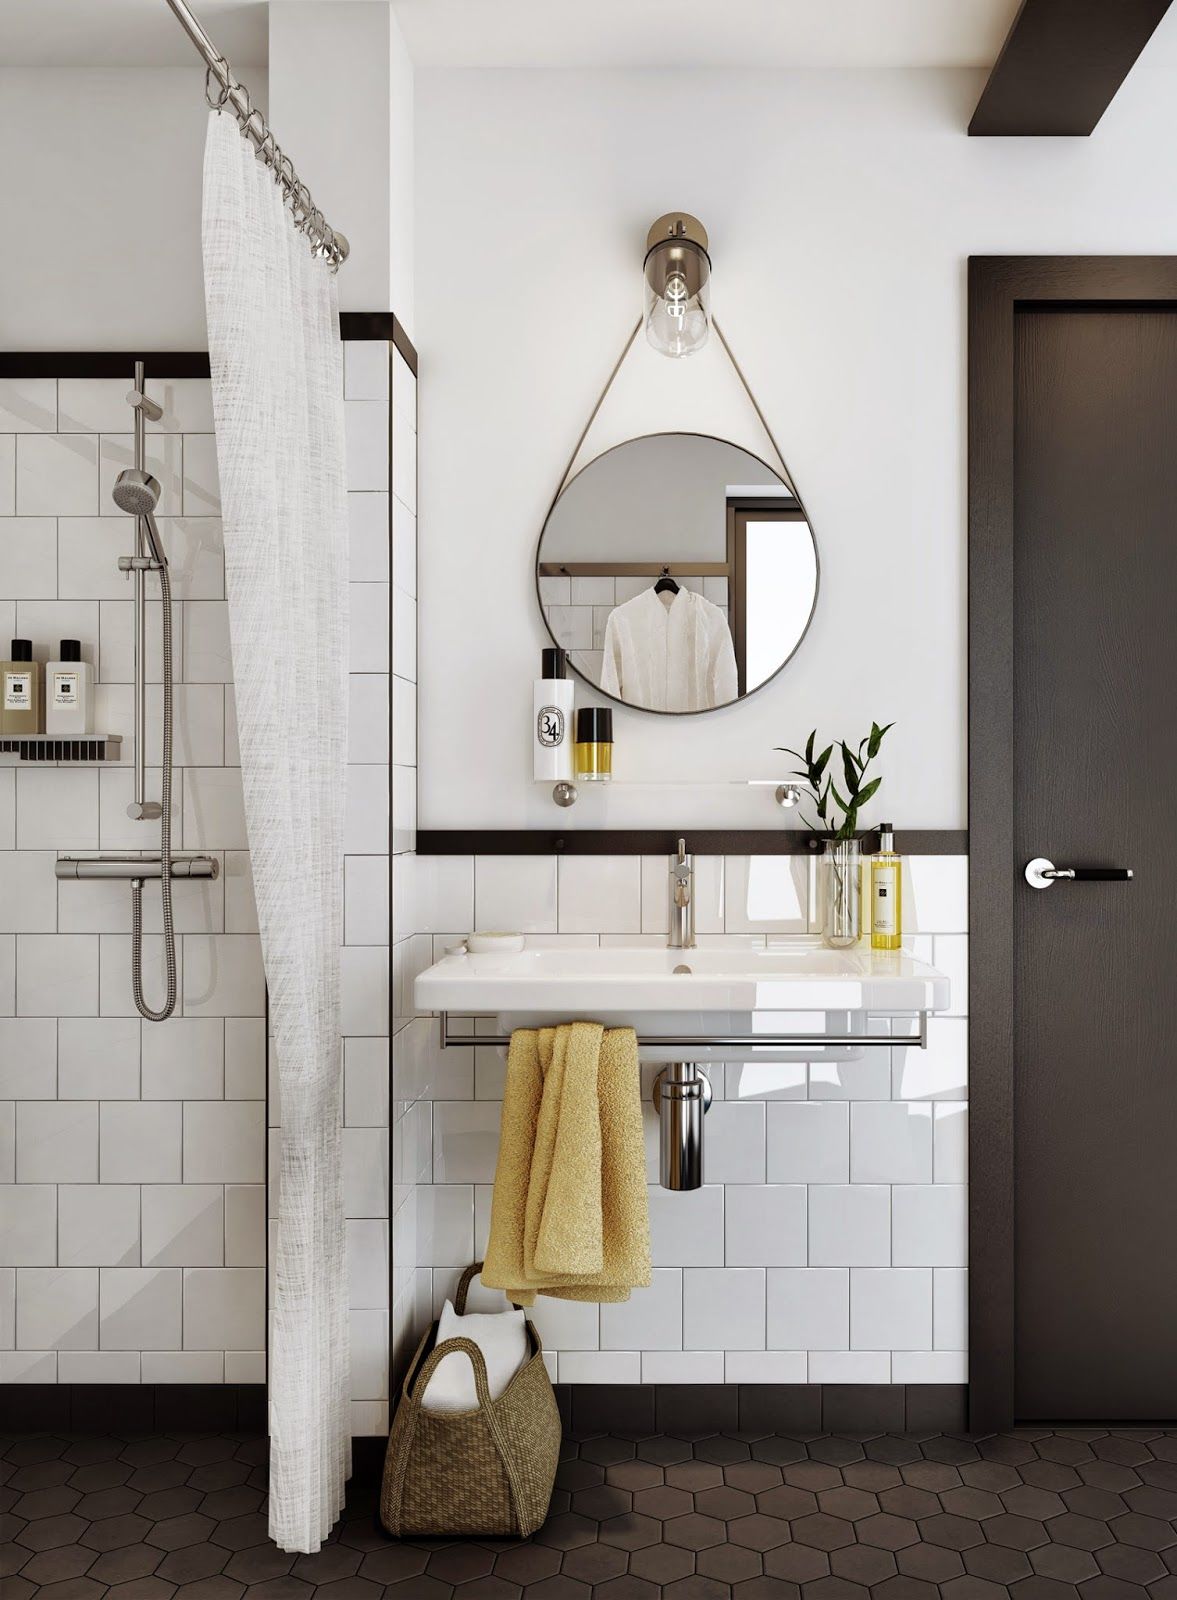 Gương treo hình tròn mang lại không gian hiện đại, tinh tế cho phòng tắm